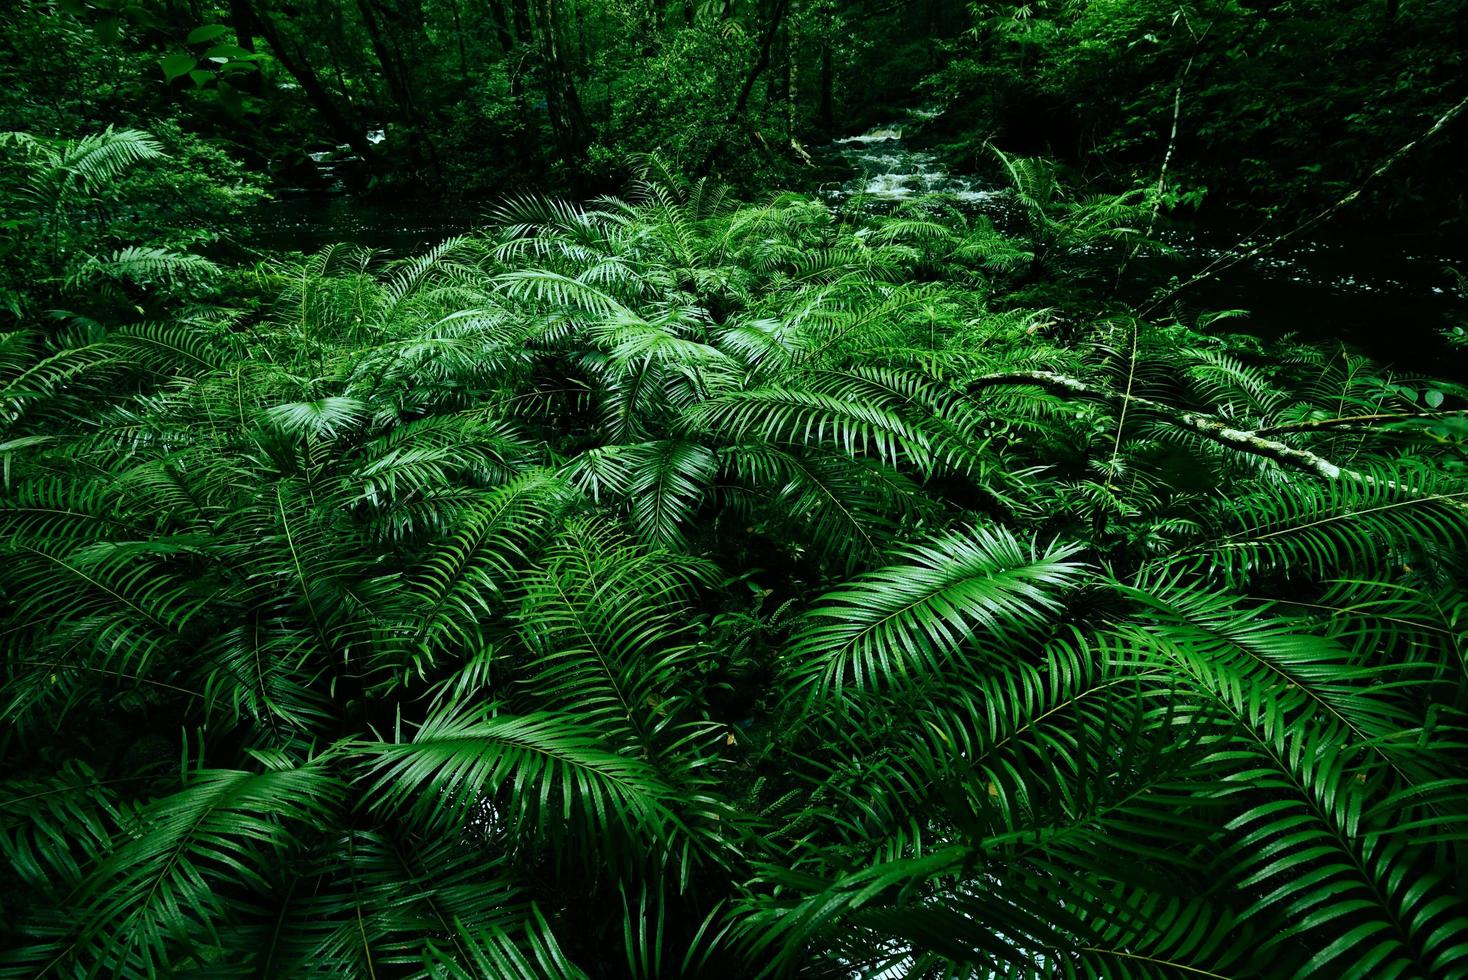 fond de buissons de fougères tropicales feuillage vert luxuriant dans la forêt tropicale avec arbre de plantes naturelles et rivière de ruisseau de cascade - arrière-plans floraux de feuilles vertes ainsi que des thèmes tropicaux et de la jungle forêt amazonienne photo